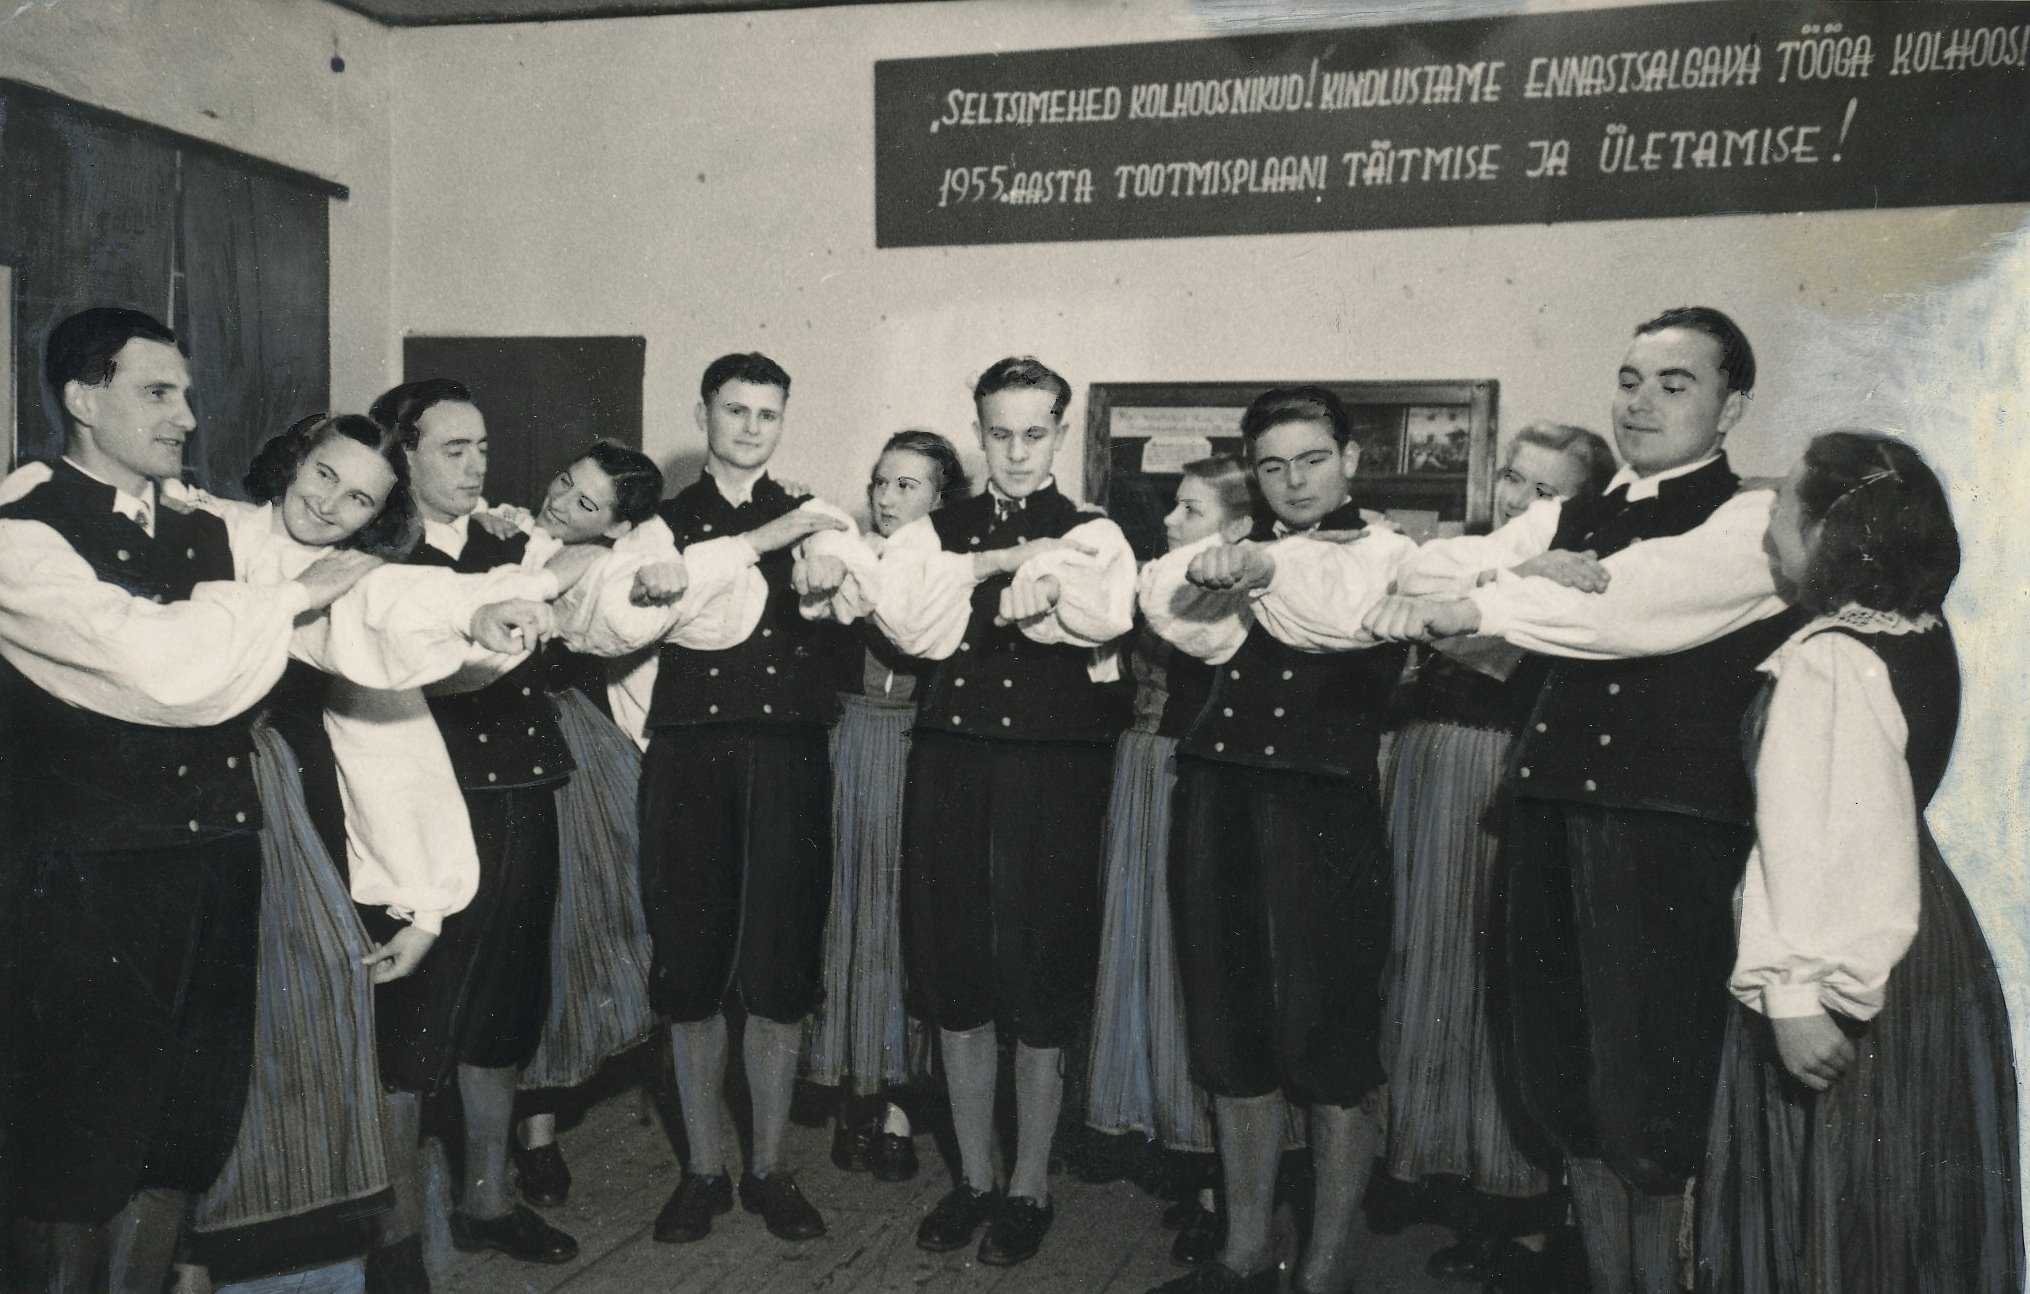 Foto. Vastseliina kultuurimaja rahvatantsuring harjutamas novembris 1955.a.